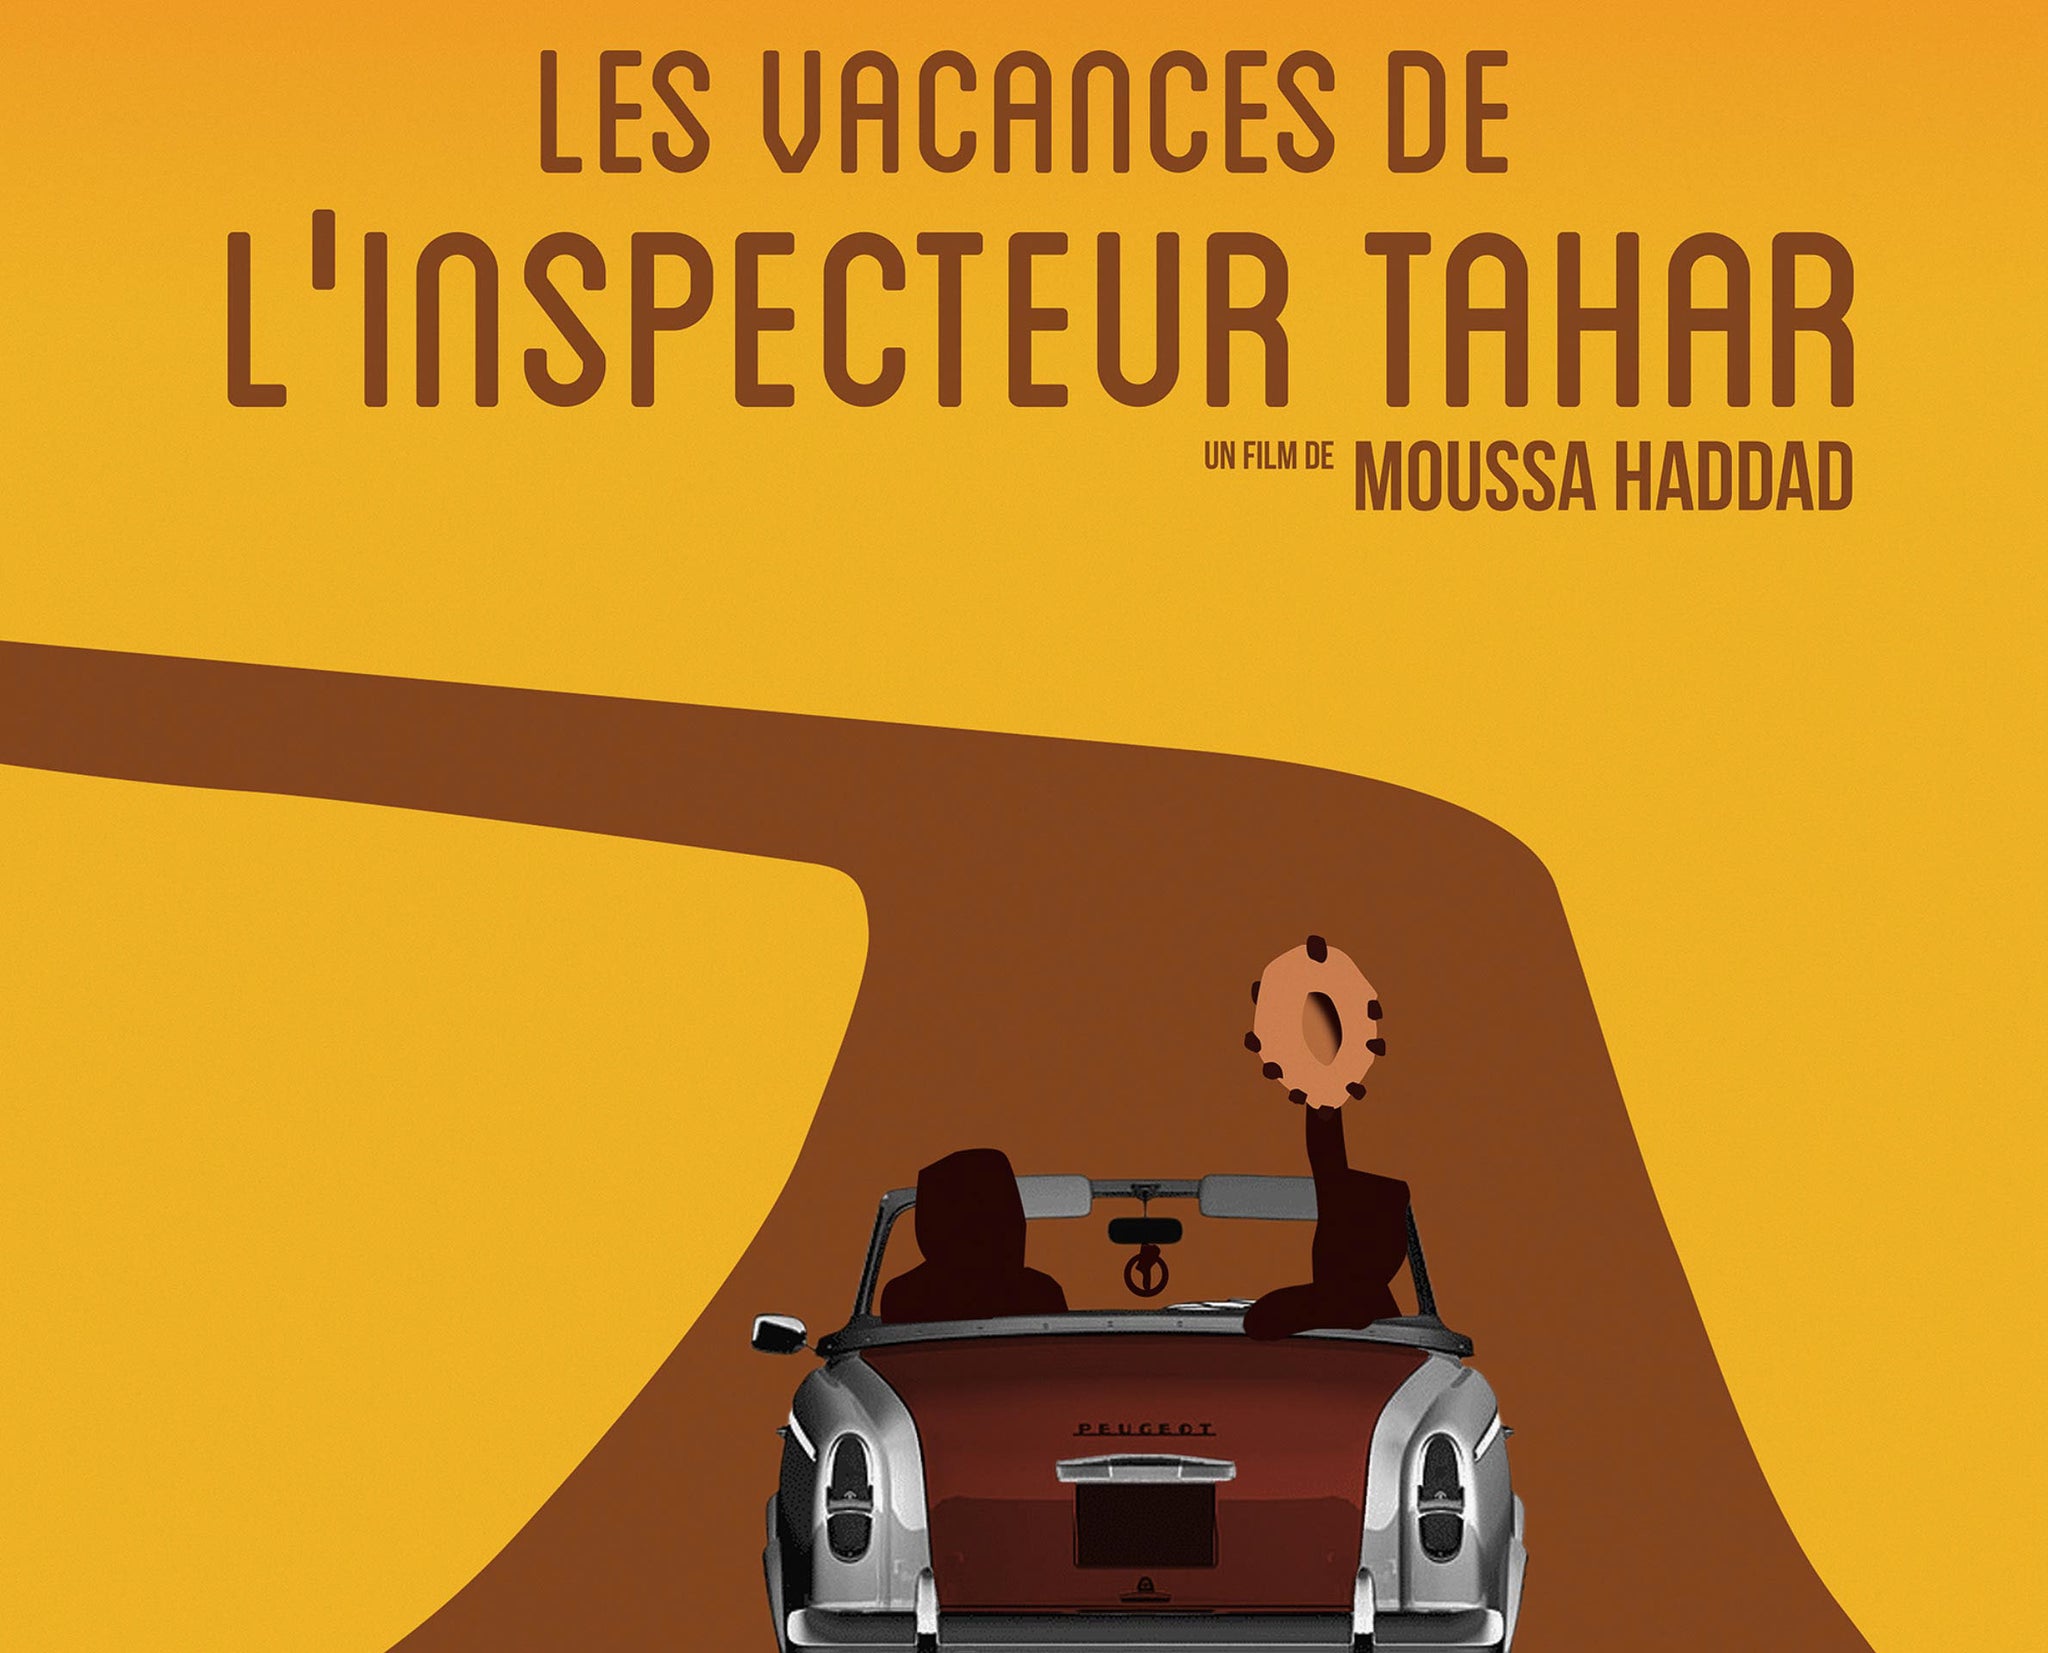 Les Vacances de l'inspecteur Tahar